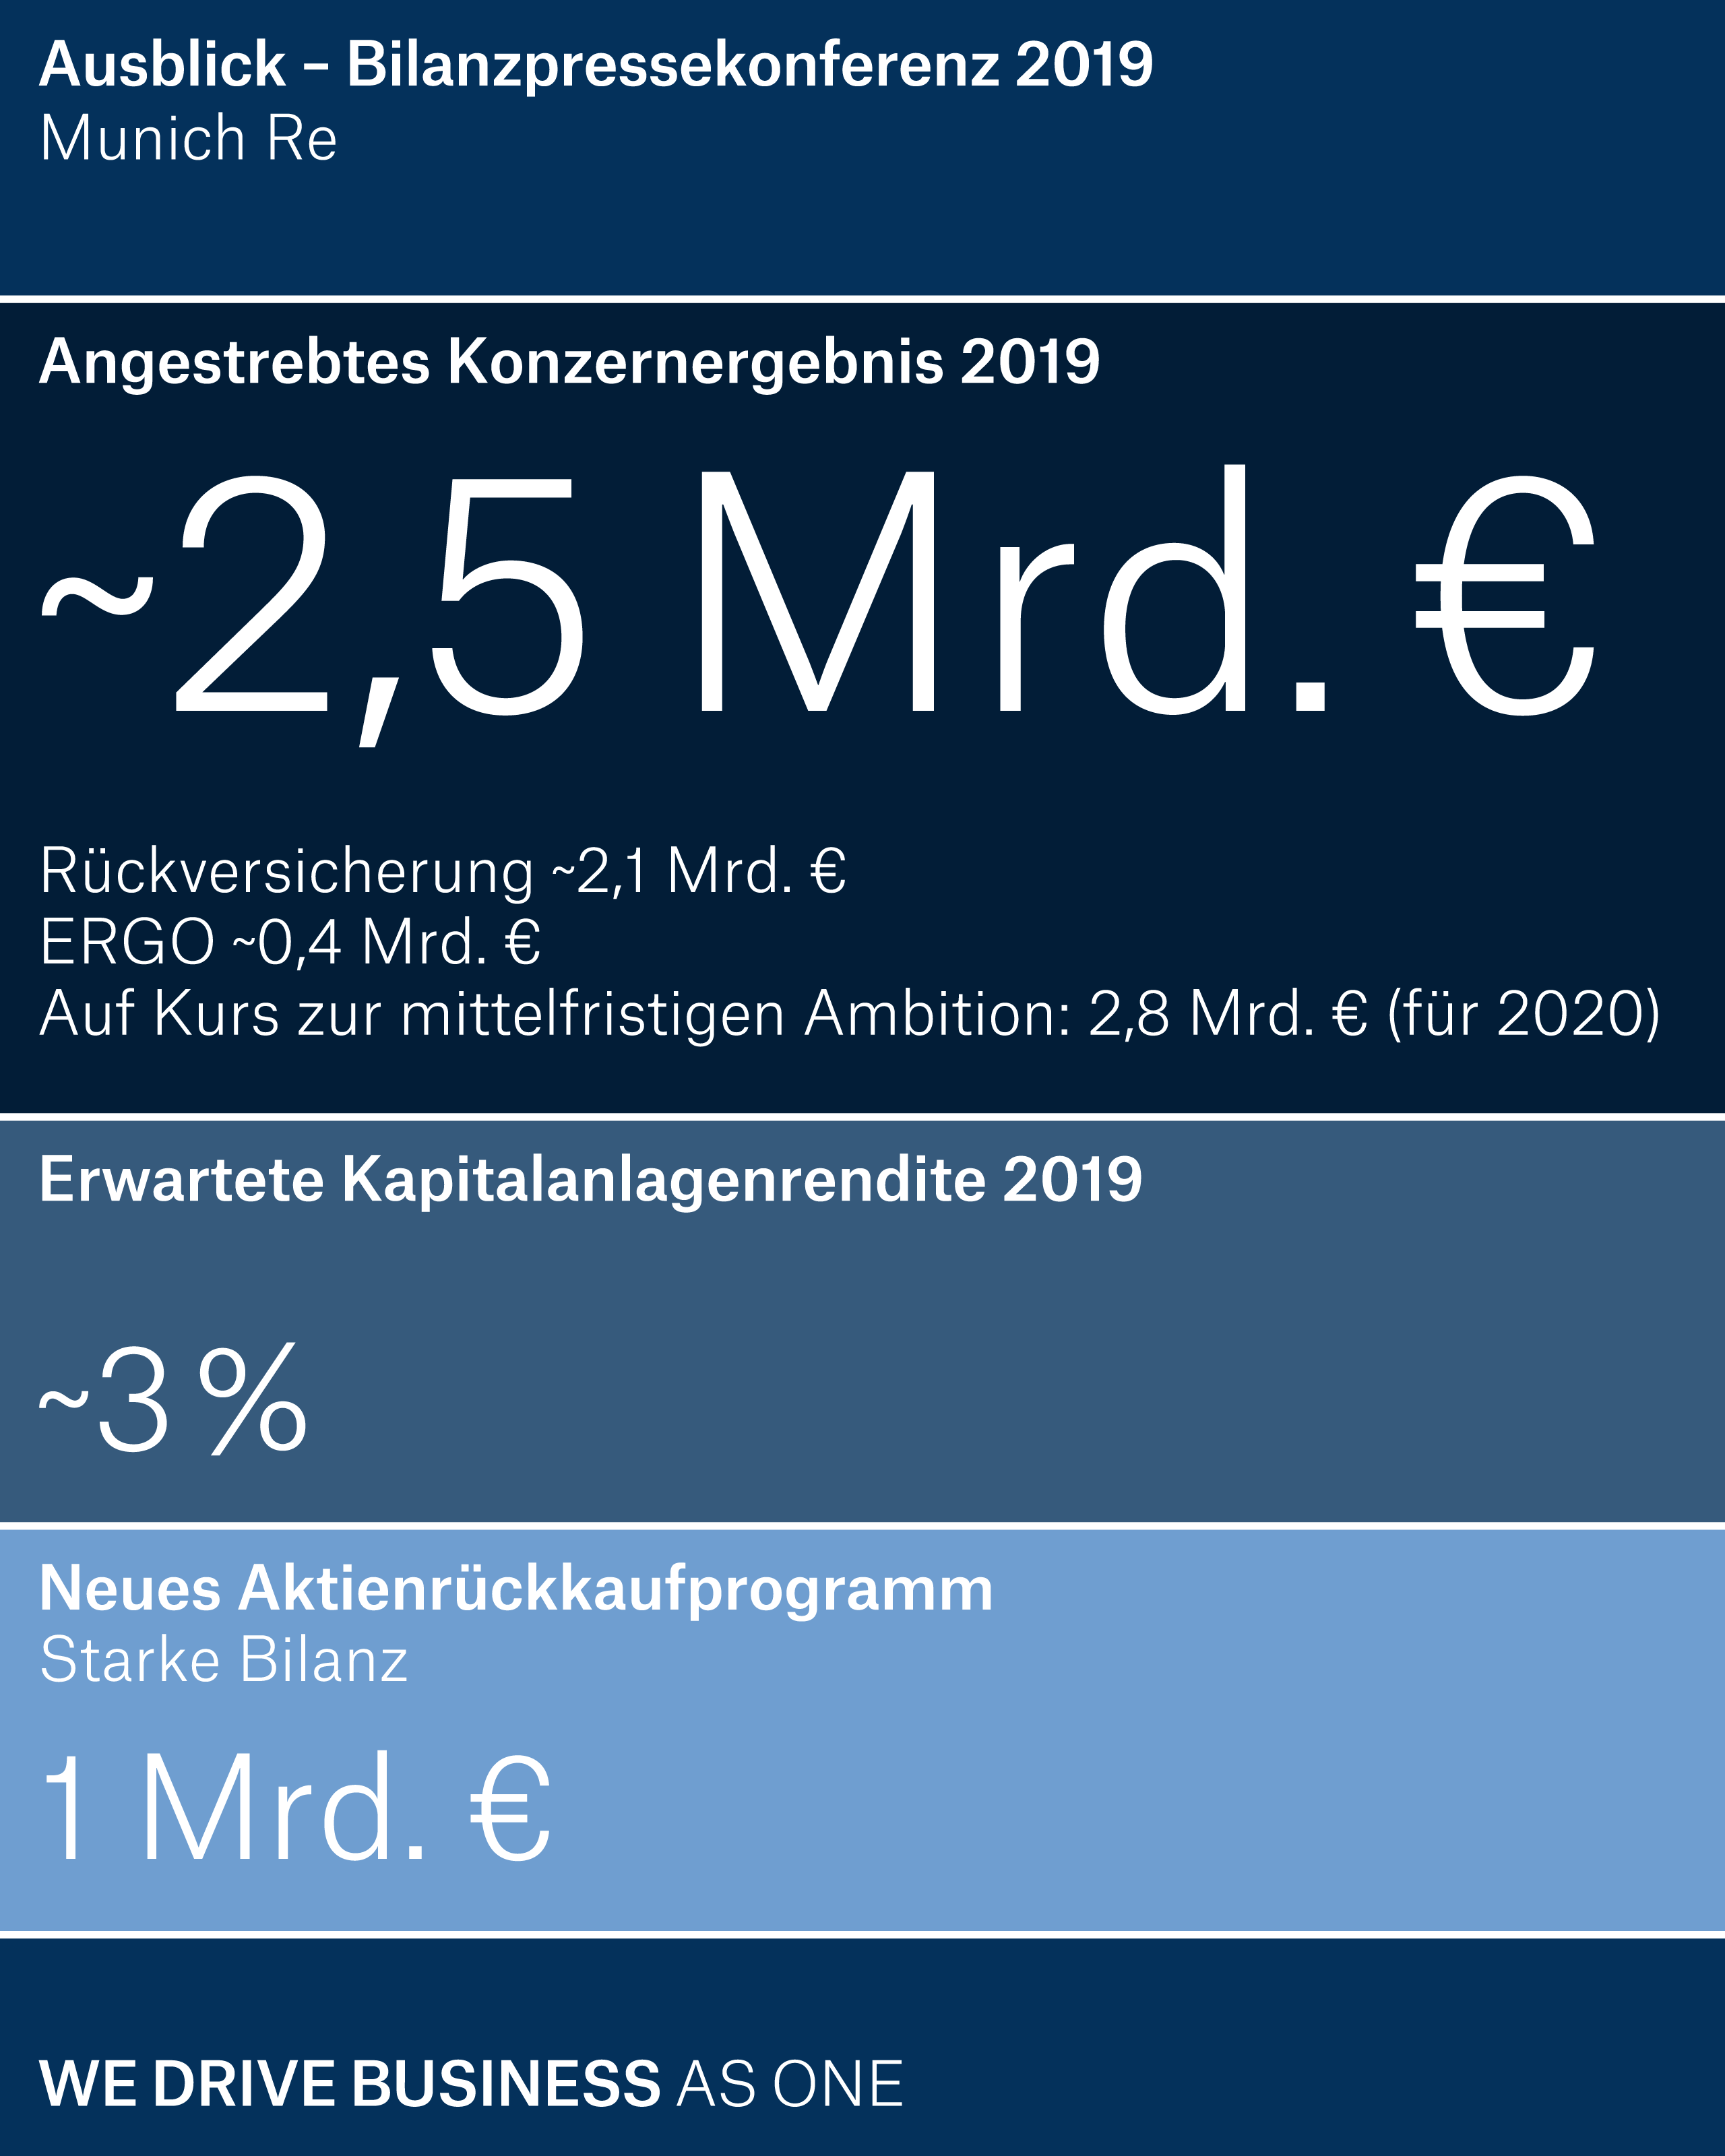 Ausblick 2019: Angestrebtes Konzernergebnis von rund 2,5 Mrd. € Munich Re strebt für das laufende Jahr einen Gewinnanstieg um 200 Mio. € auf dann rund 2,5 Mrd. € an. Davon werden rund 2,1 Mrd. € im Geschäftsfeld Rückversicherung und rund 0,4 Mrd. € im Geschäftsfeld ERGO erwartet.